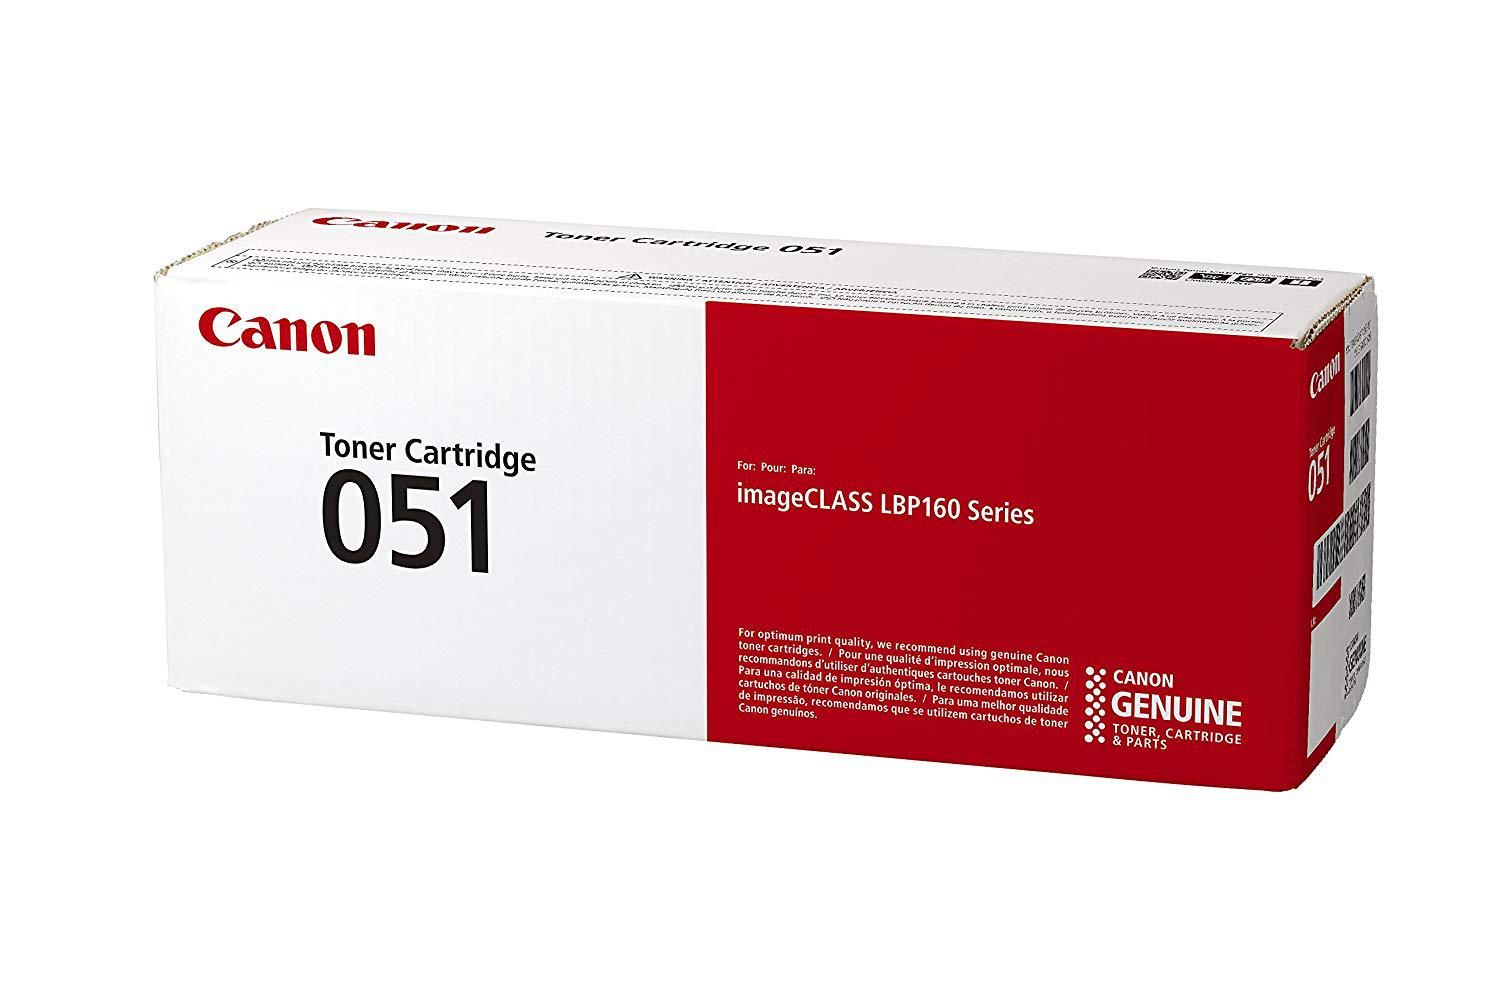 Toner CAMELLEON Black, CF244X-CP, compatibil cu HP M15|M28, 1K, incl.TV 0.8 RON, 